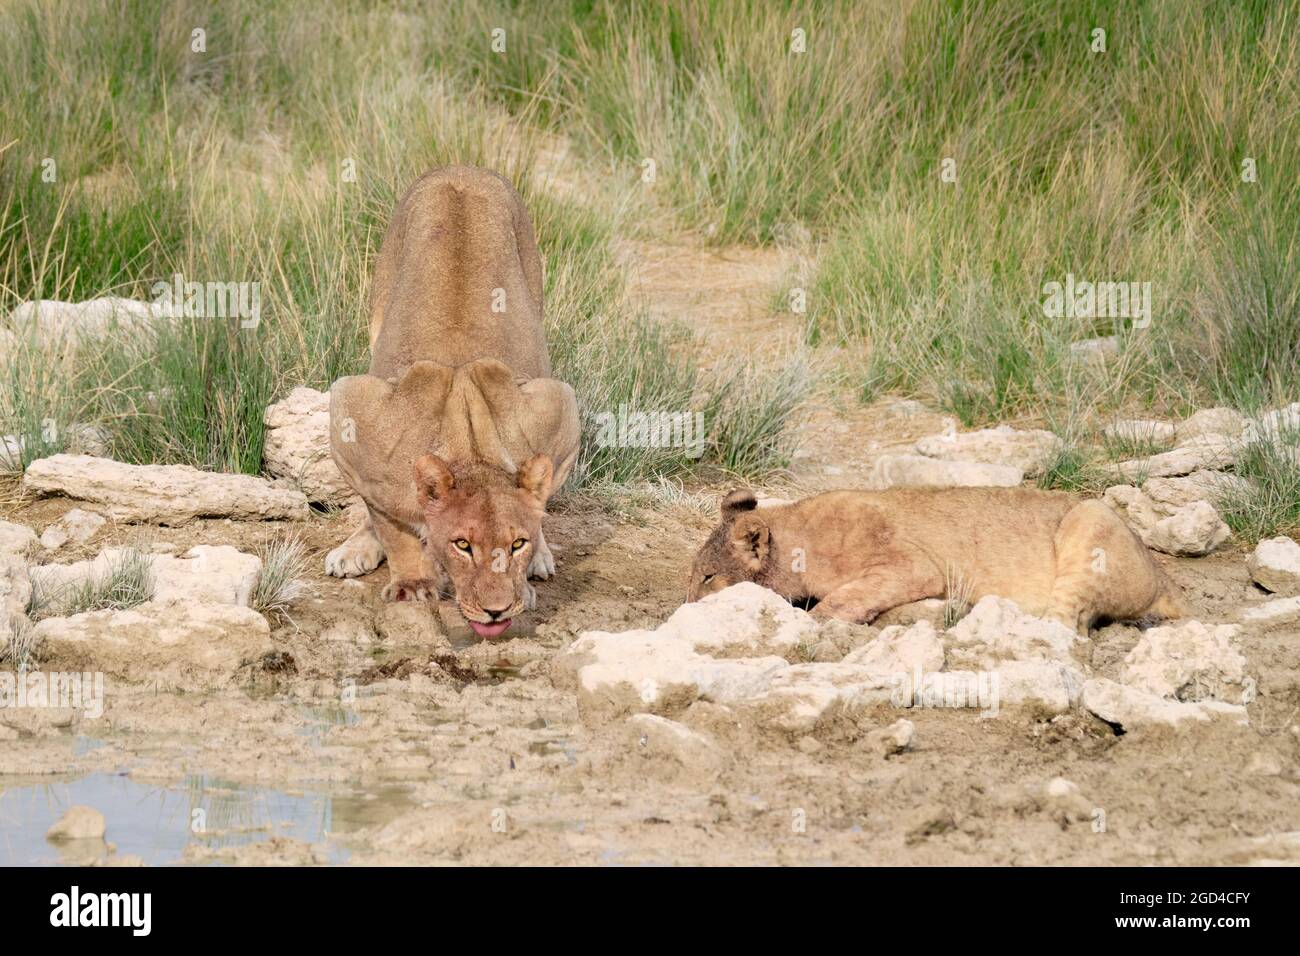 Lioness (Panthera Leo) and baby lion drinking. Etosha National Park, Namibia, Africa Stock Photo